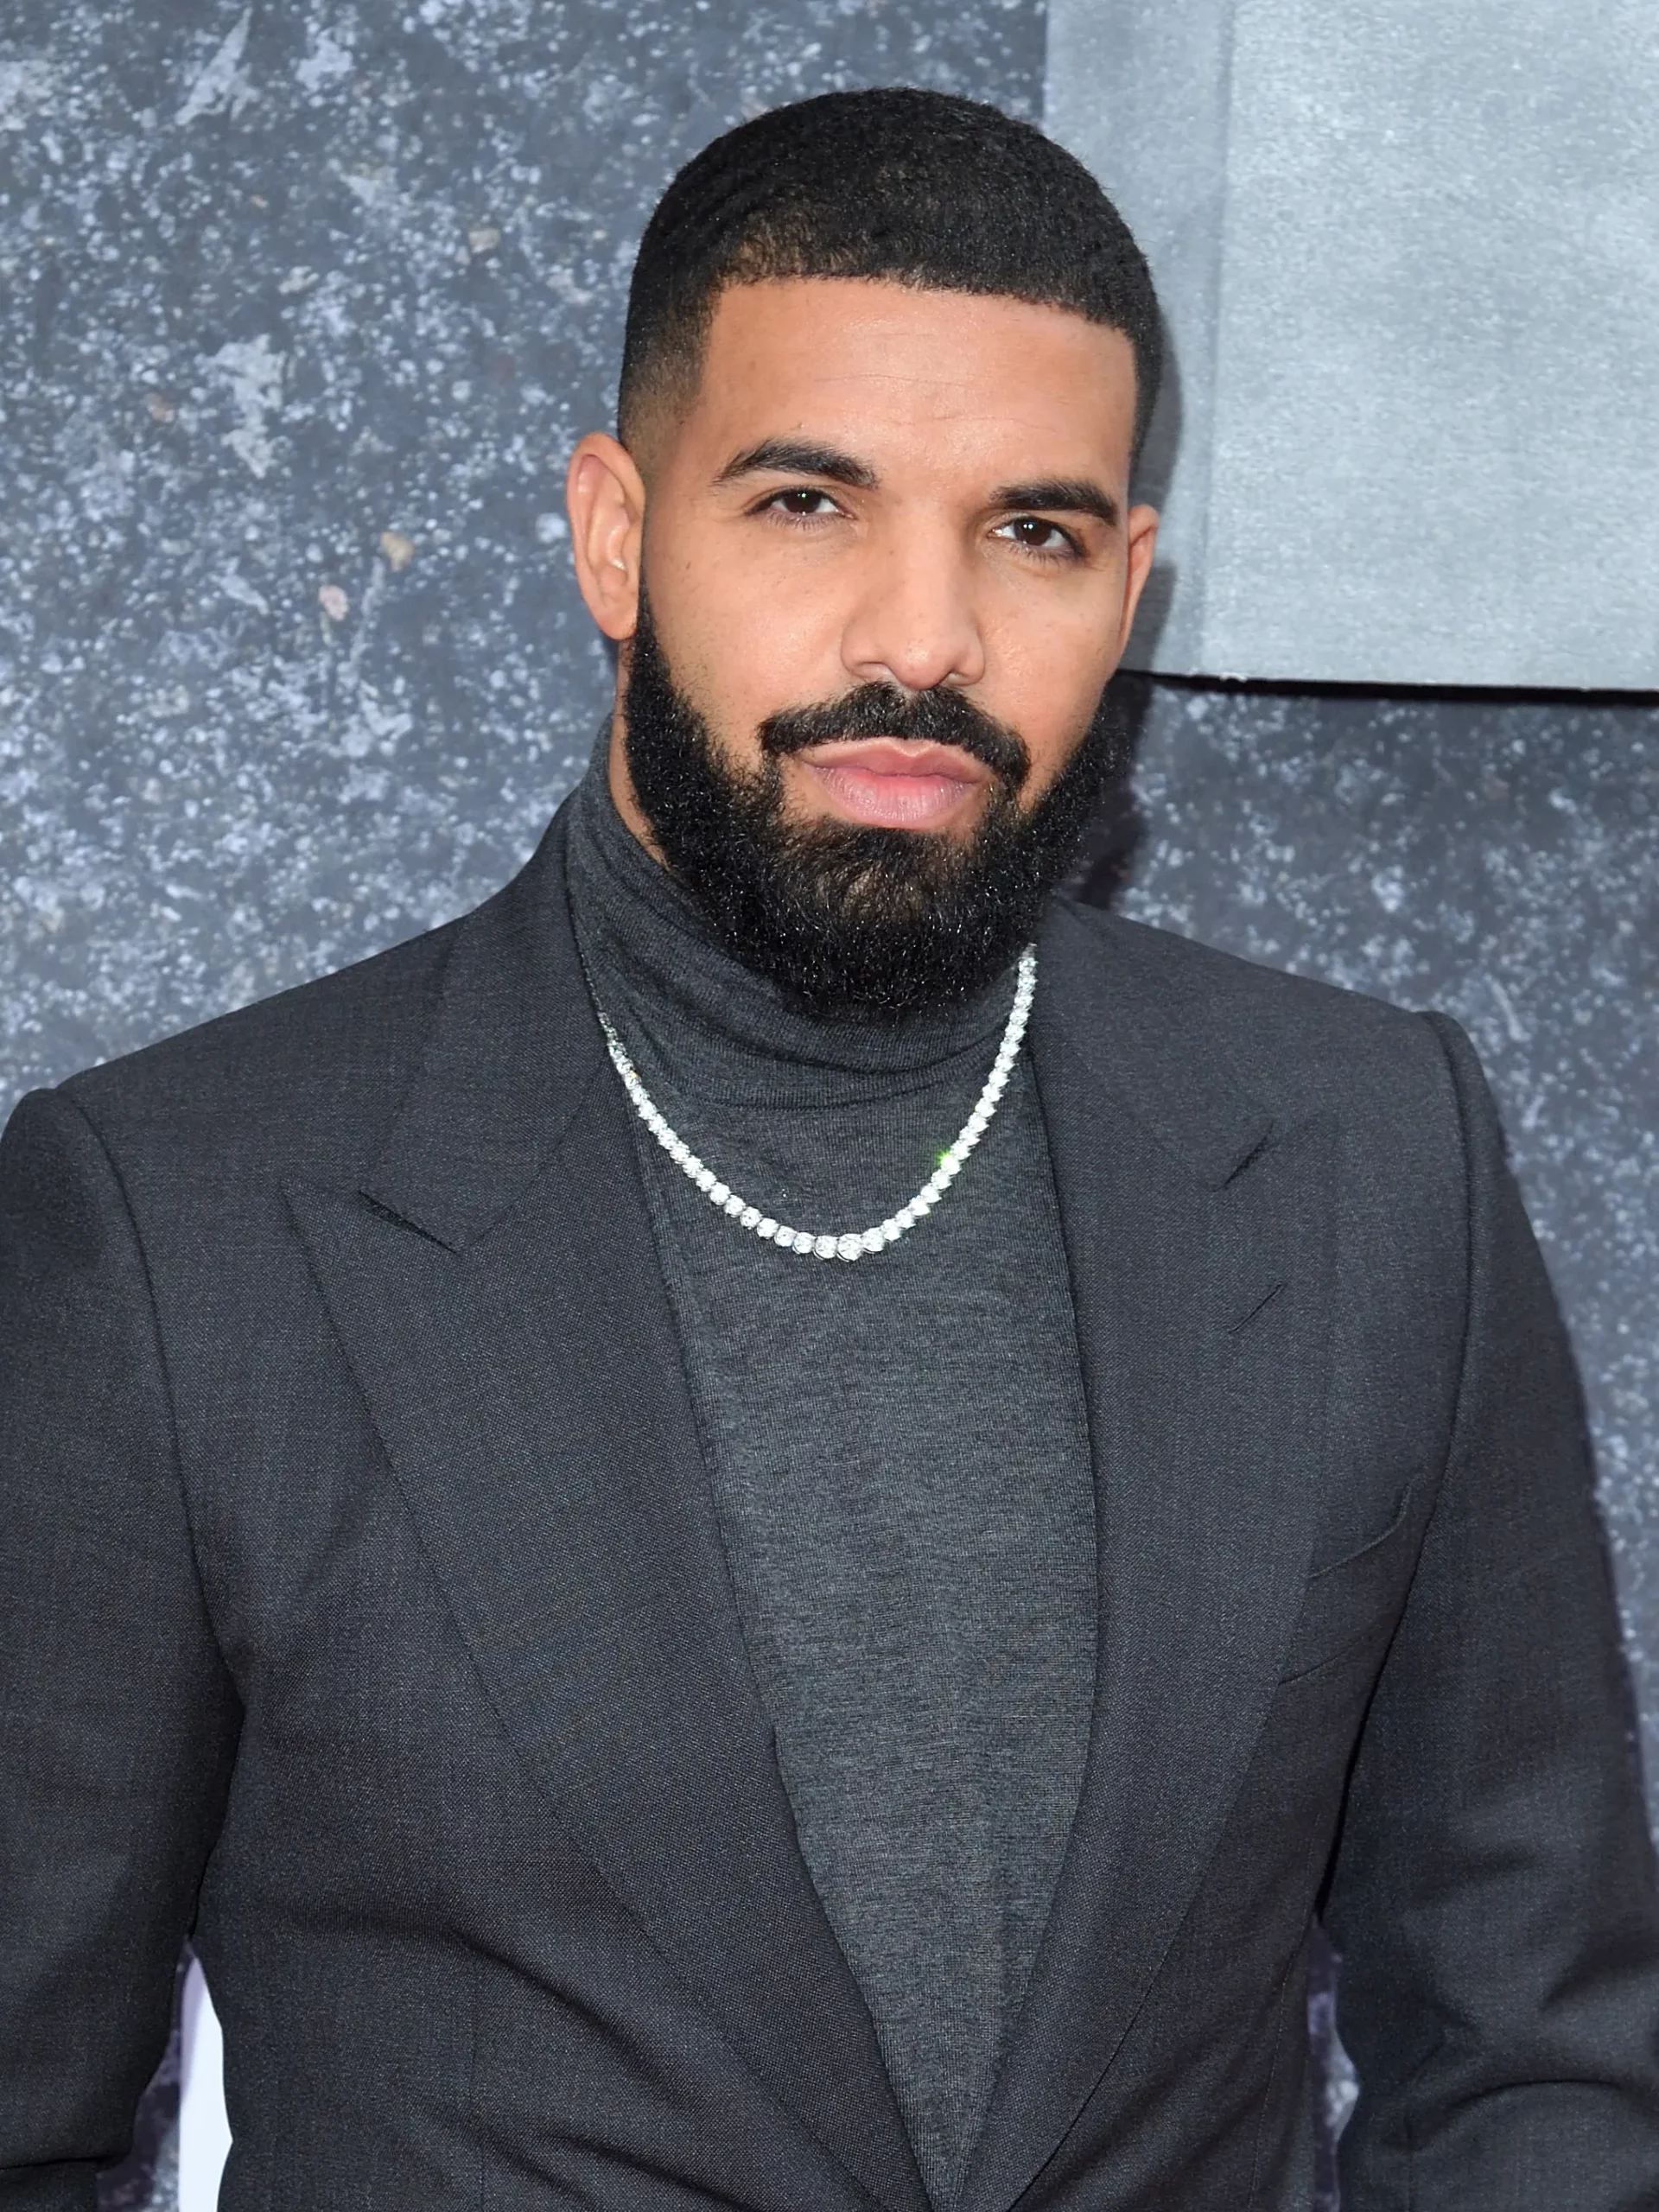 Rapper/Singer Drake